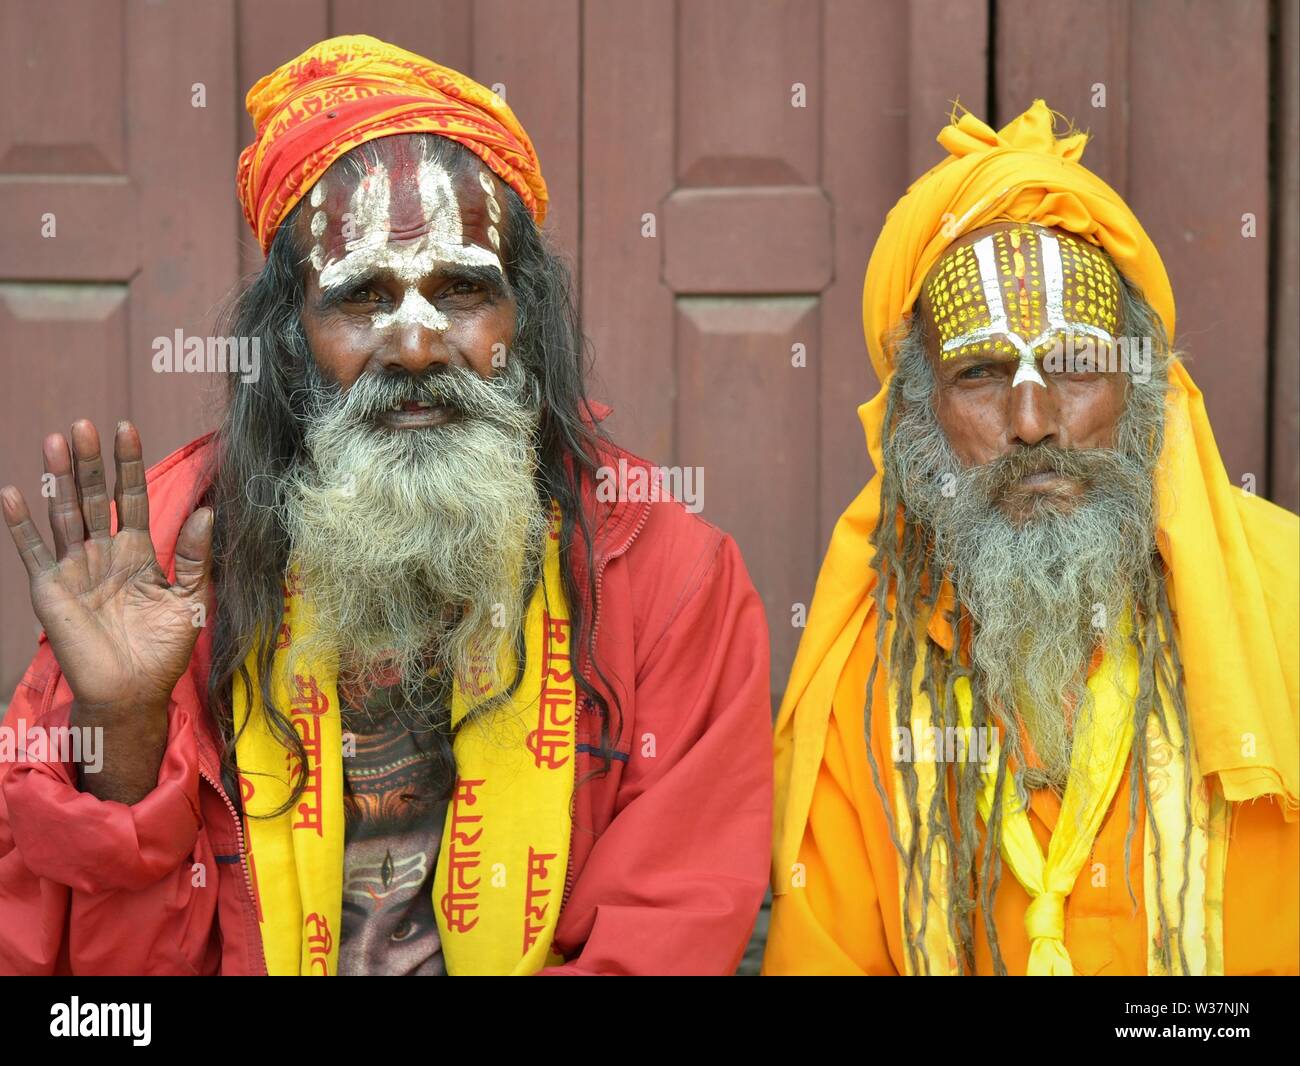 Zwei alte Nepalesische Vaishnavite sadhus (heilige Männer, die Anbetung Vishnu) mit bemalten Stirn tragen traditionelle rote und gelbe Outfit und für die Kamera posieren. Stockfoto